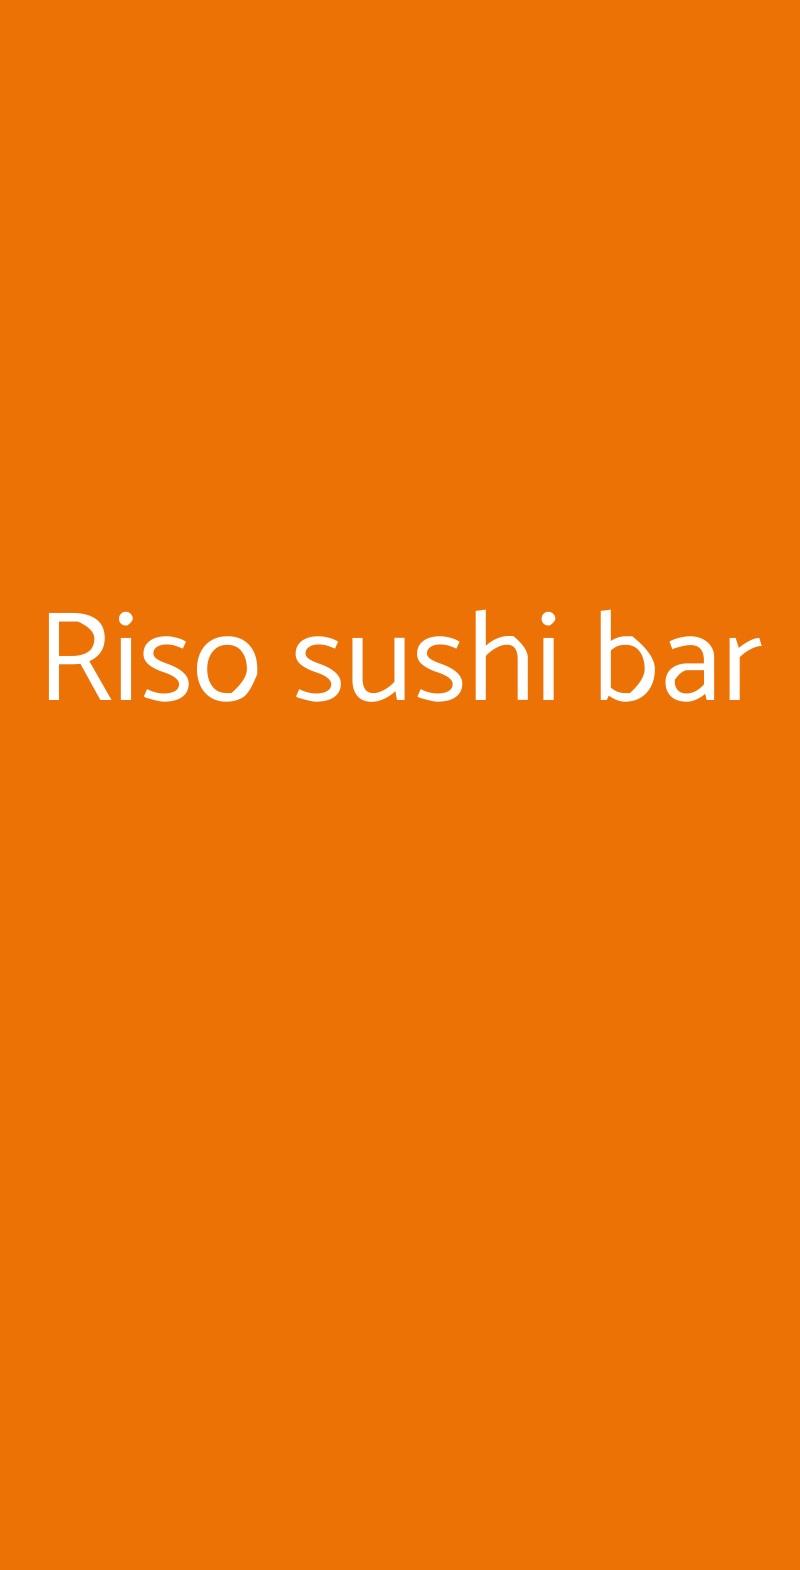 Riso sushi bar Milano menù 1 pagina